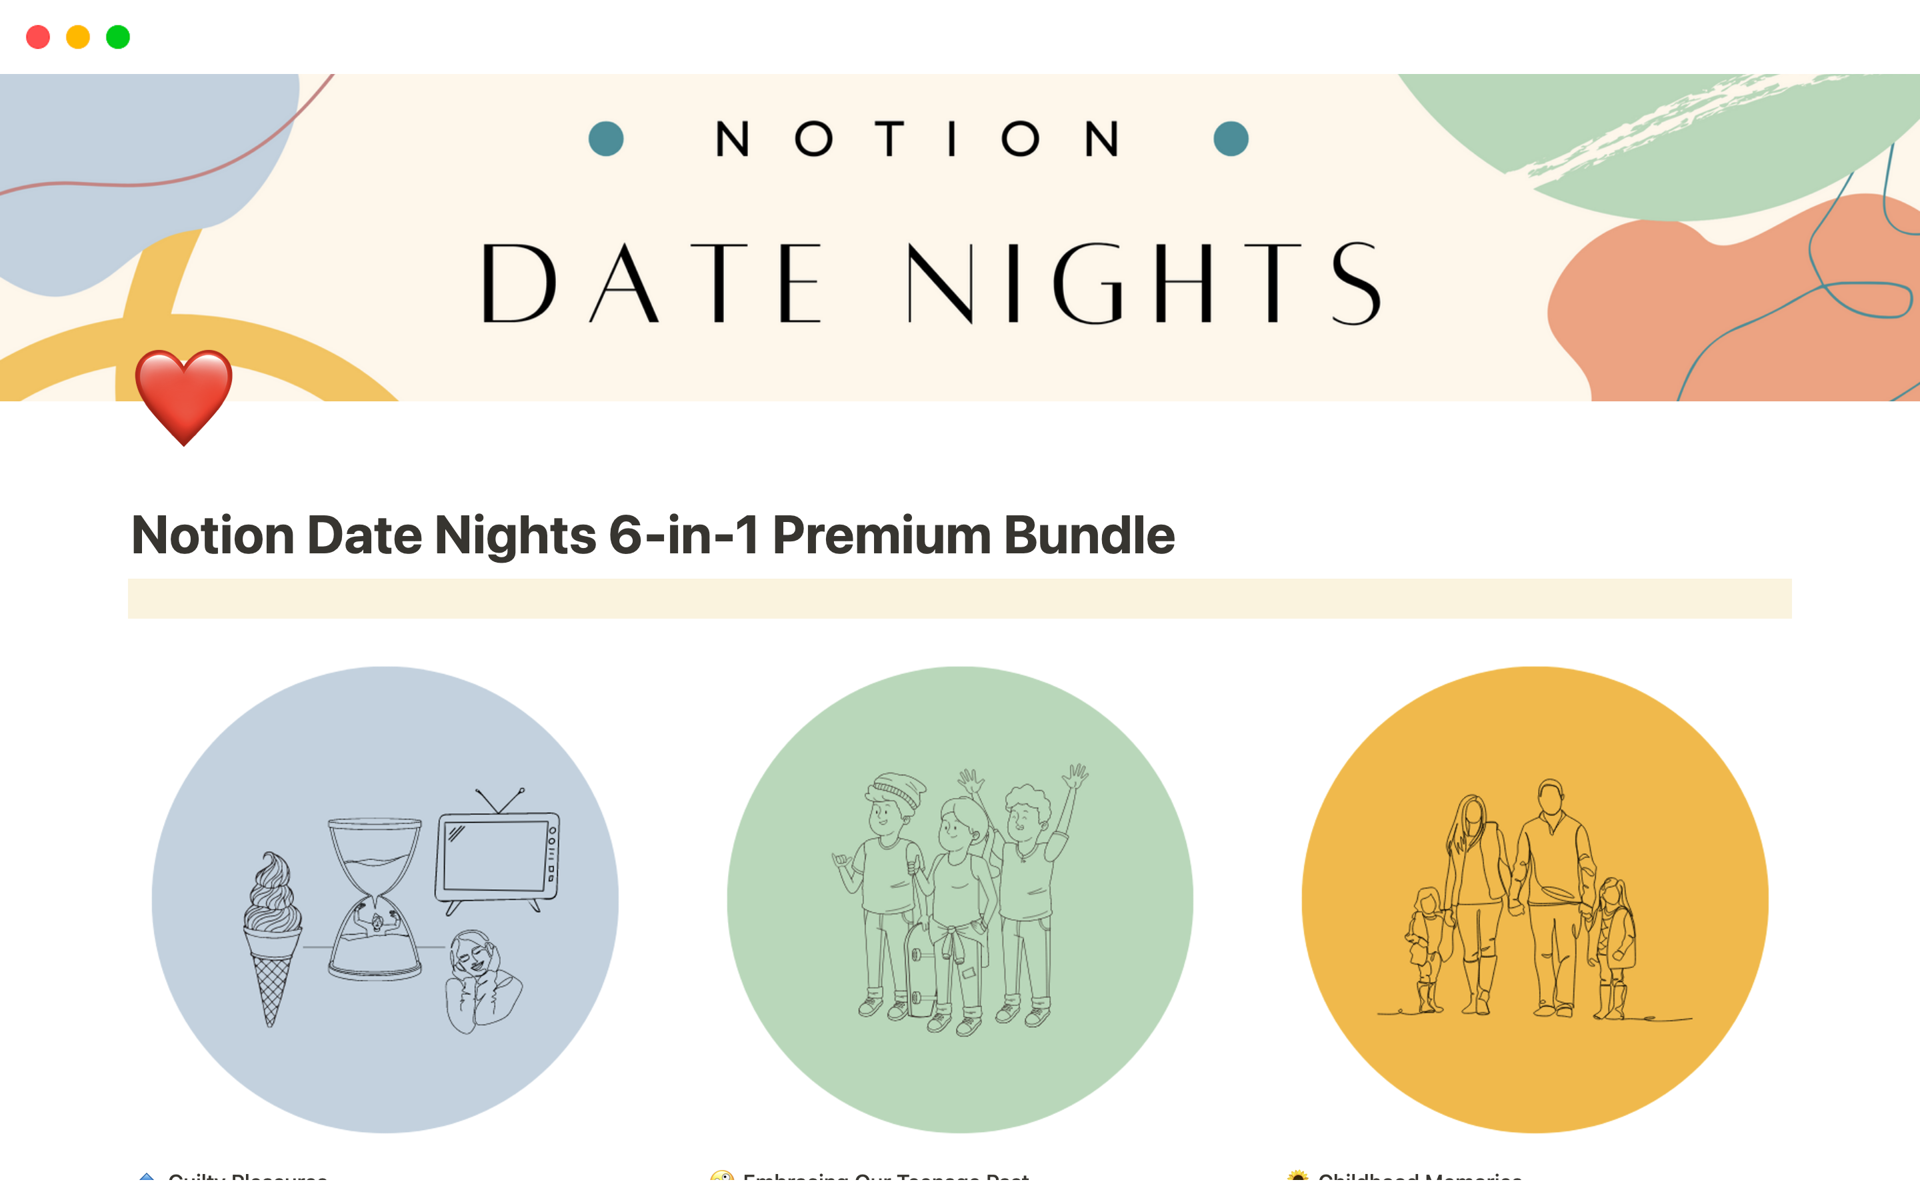 Date Night Bundle - Date Night Bundle